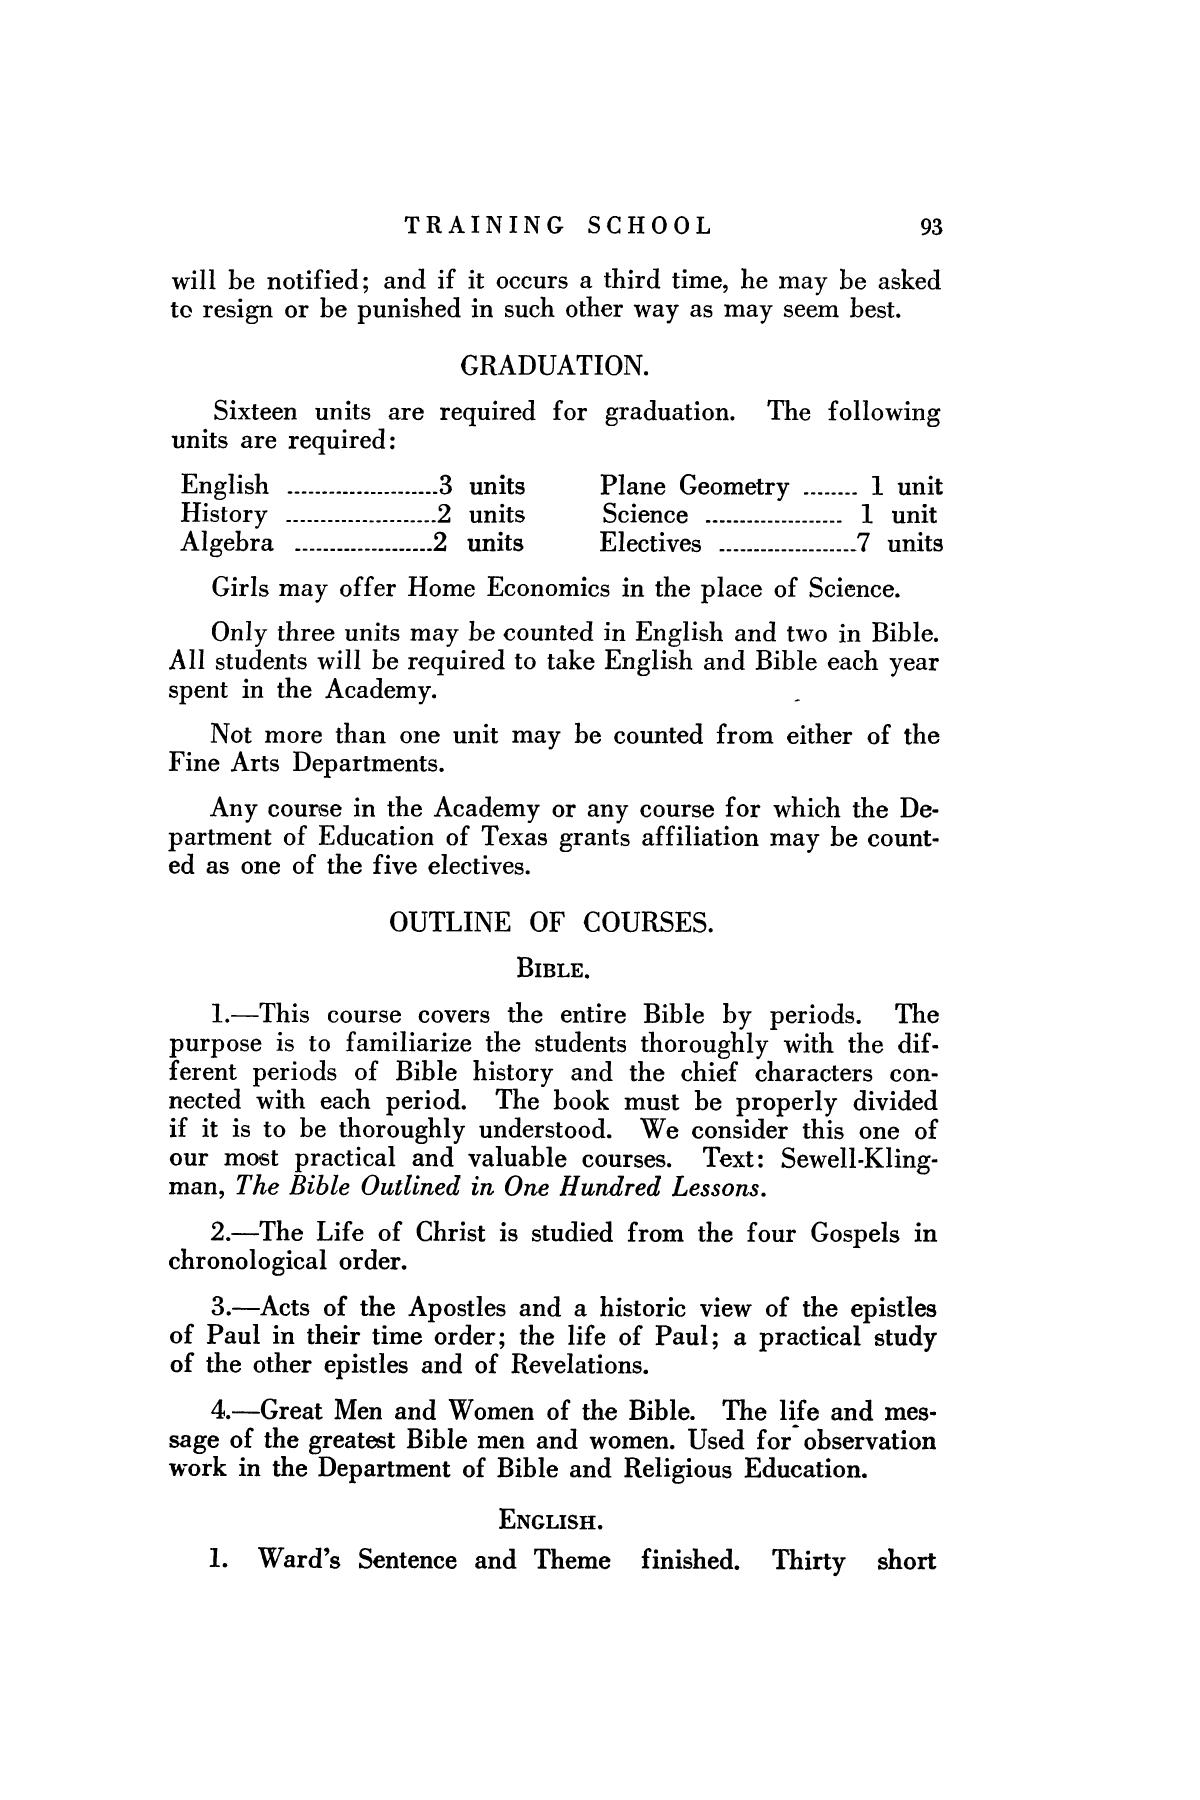 Catalog of Abilene Christian College, 1926-1927
                                                
                                                    93
                                                